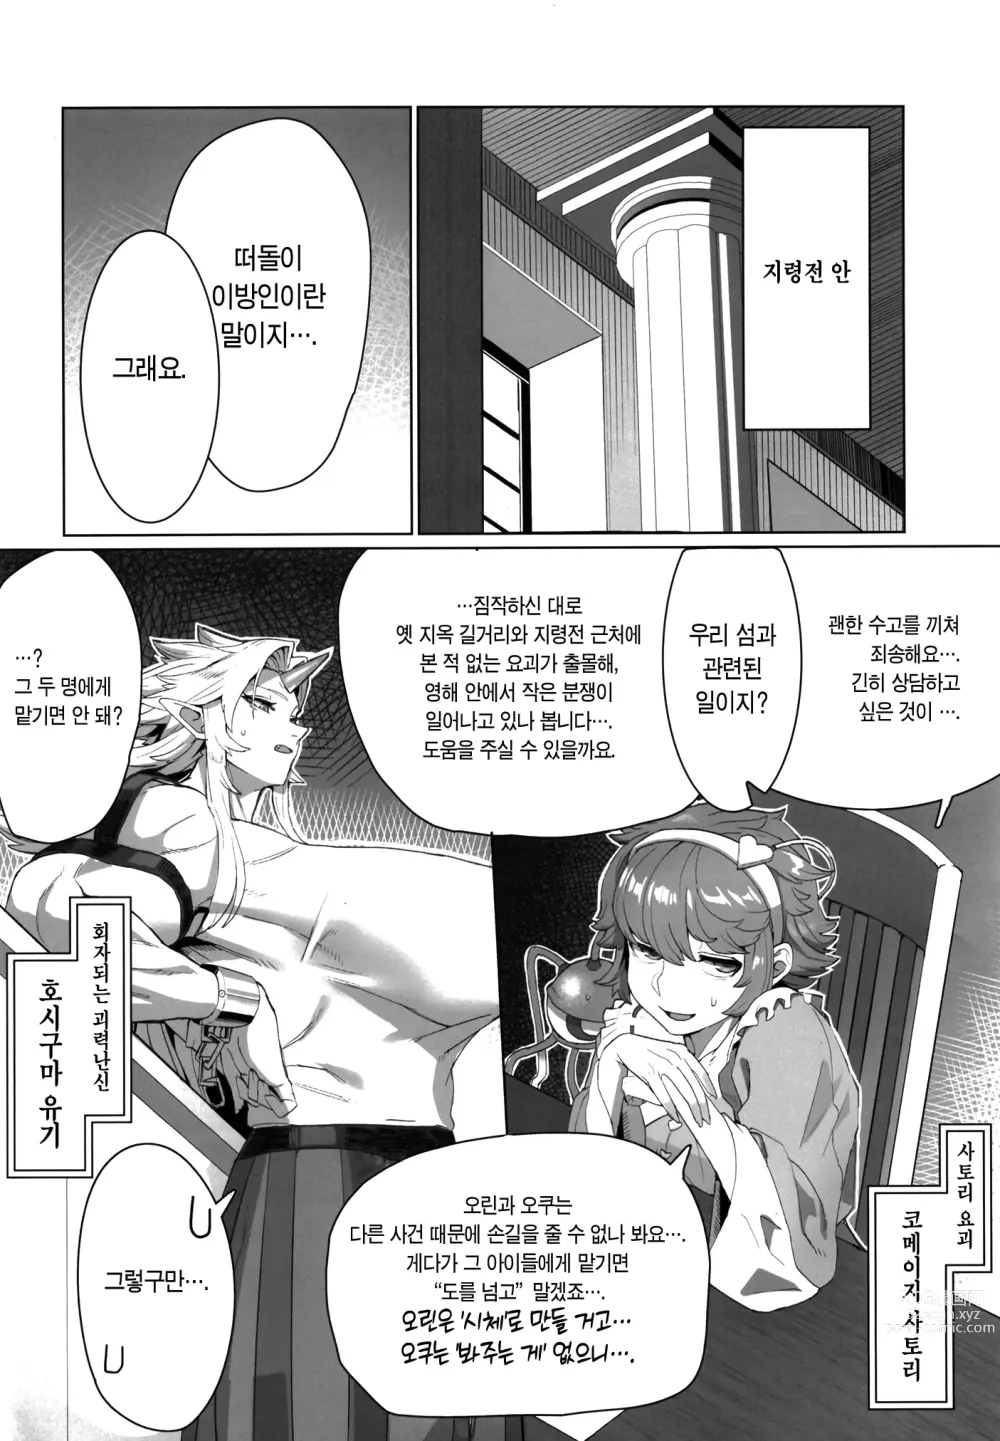 Page 3 of doujinshi 유우기 누님과 오크가 힘겨루기